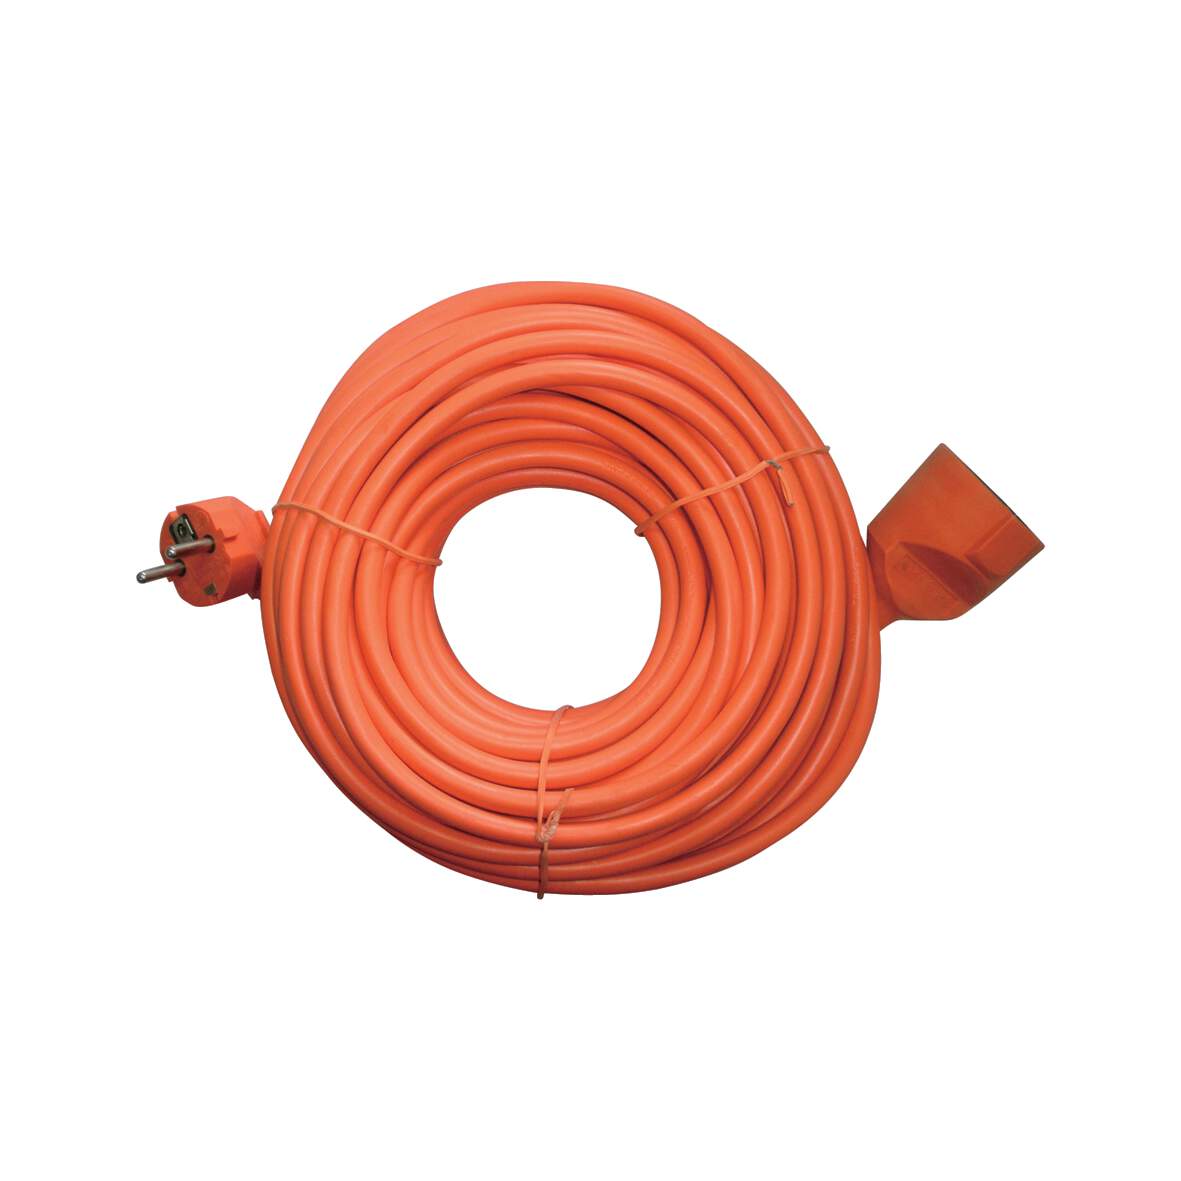 1098998 - Verlängerungskabel 20m 3x1,5mm 230 V orange